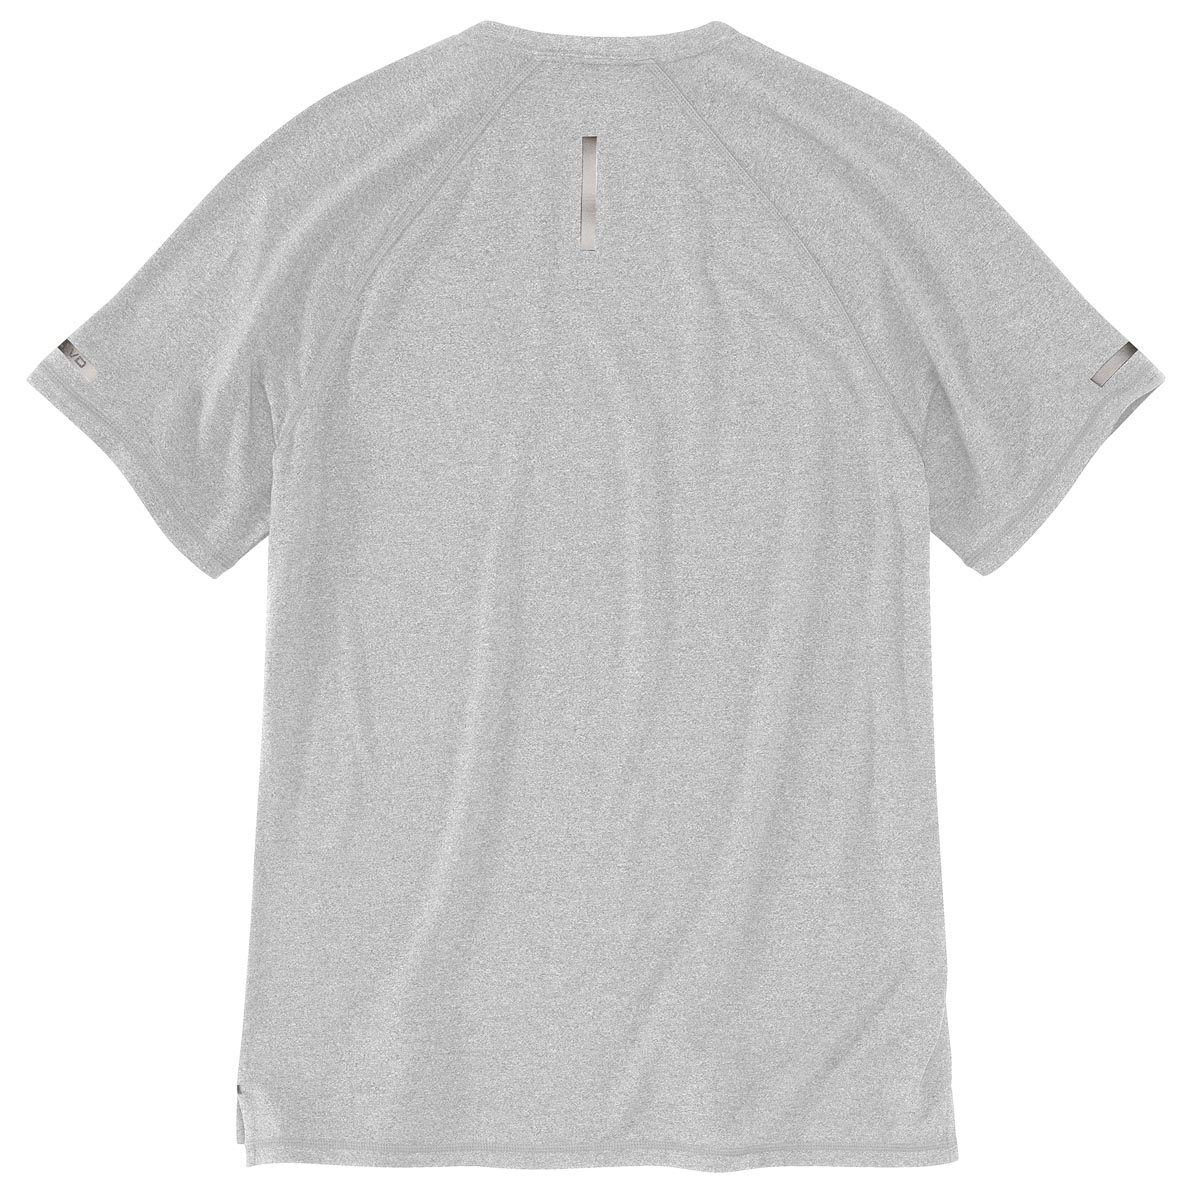 Carhartt Men's Lightweight Durable Relaxed Fit SS T-Shirt